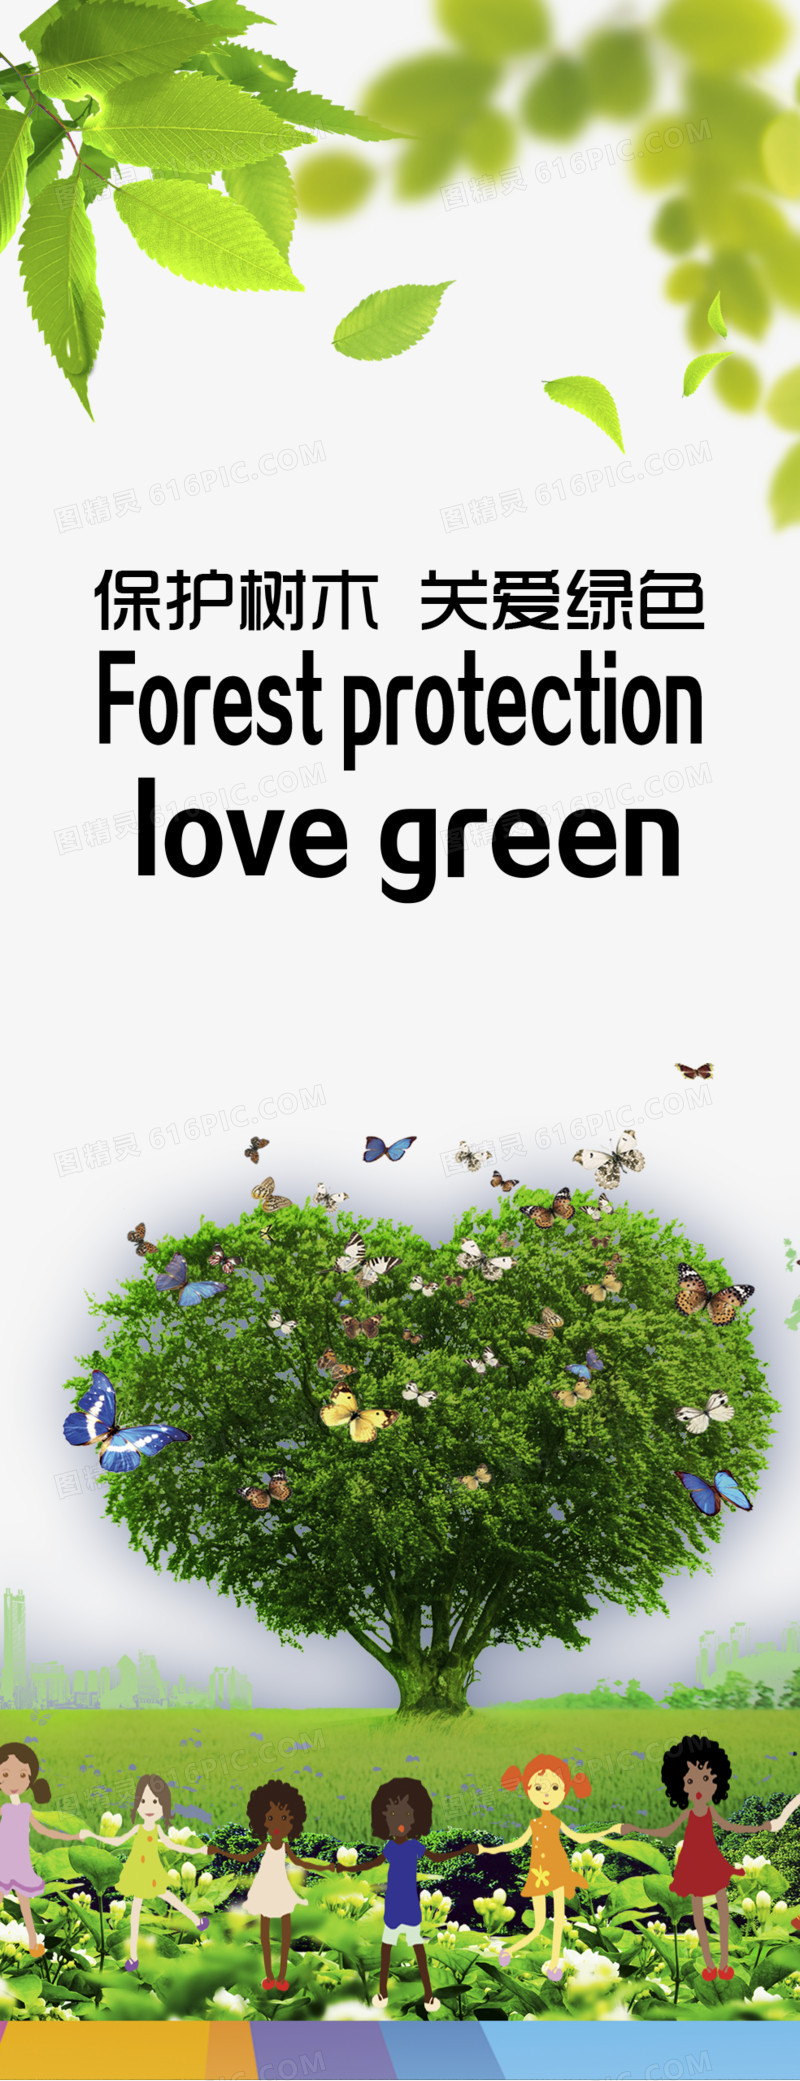 保护地球家园